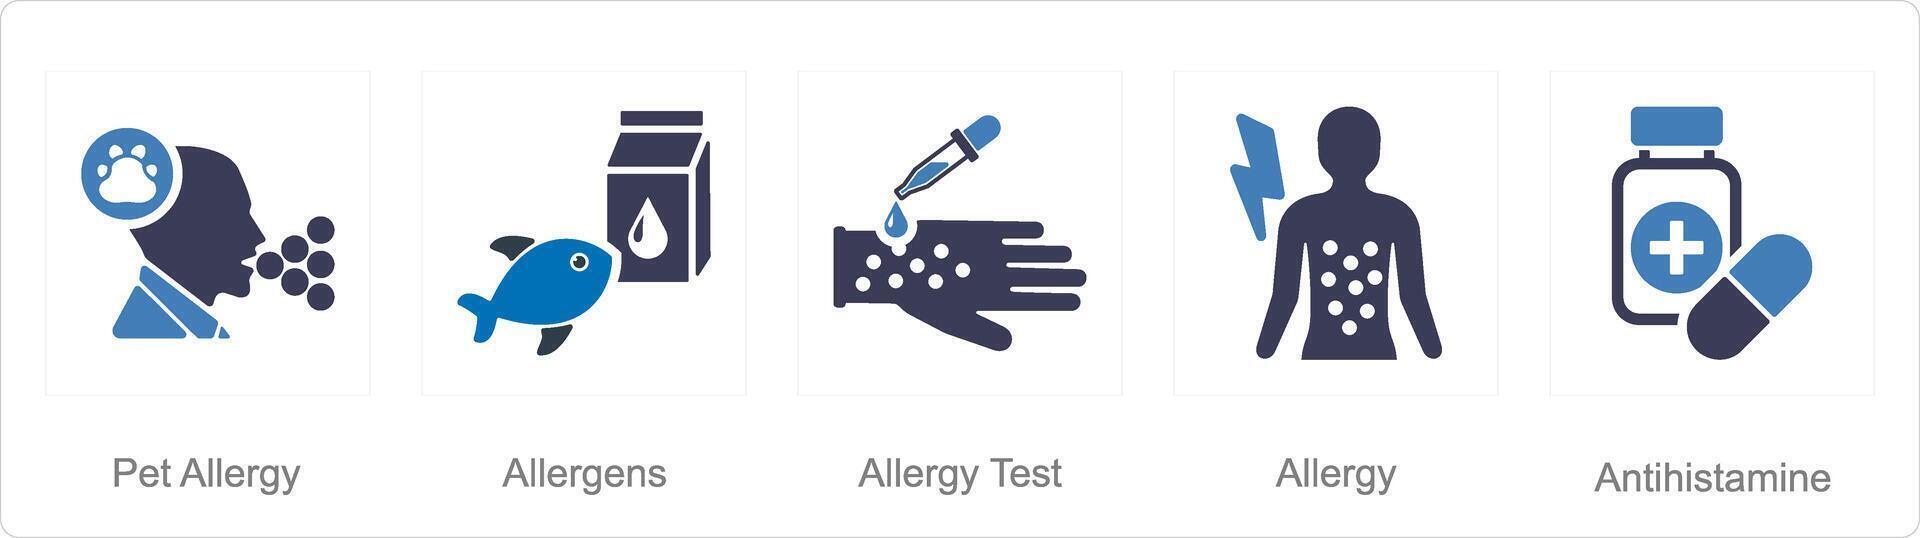 en uppsättning av 5 allergi ikoner som sällskapsdjur allergi, allergener, allergi testa vektor